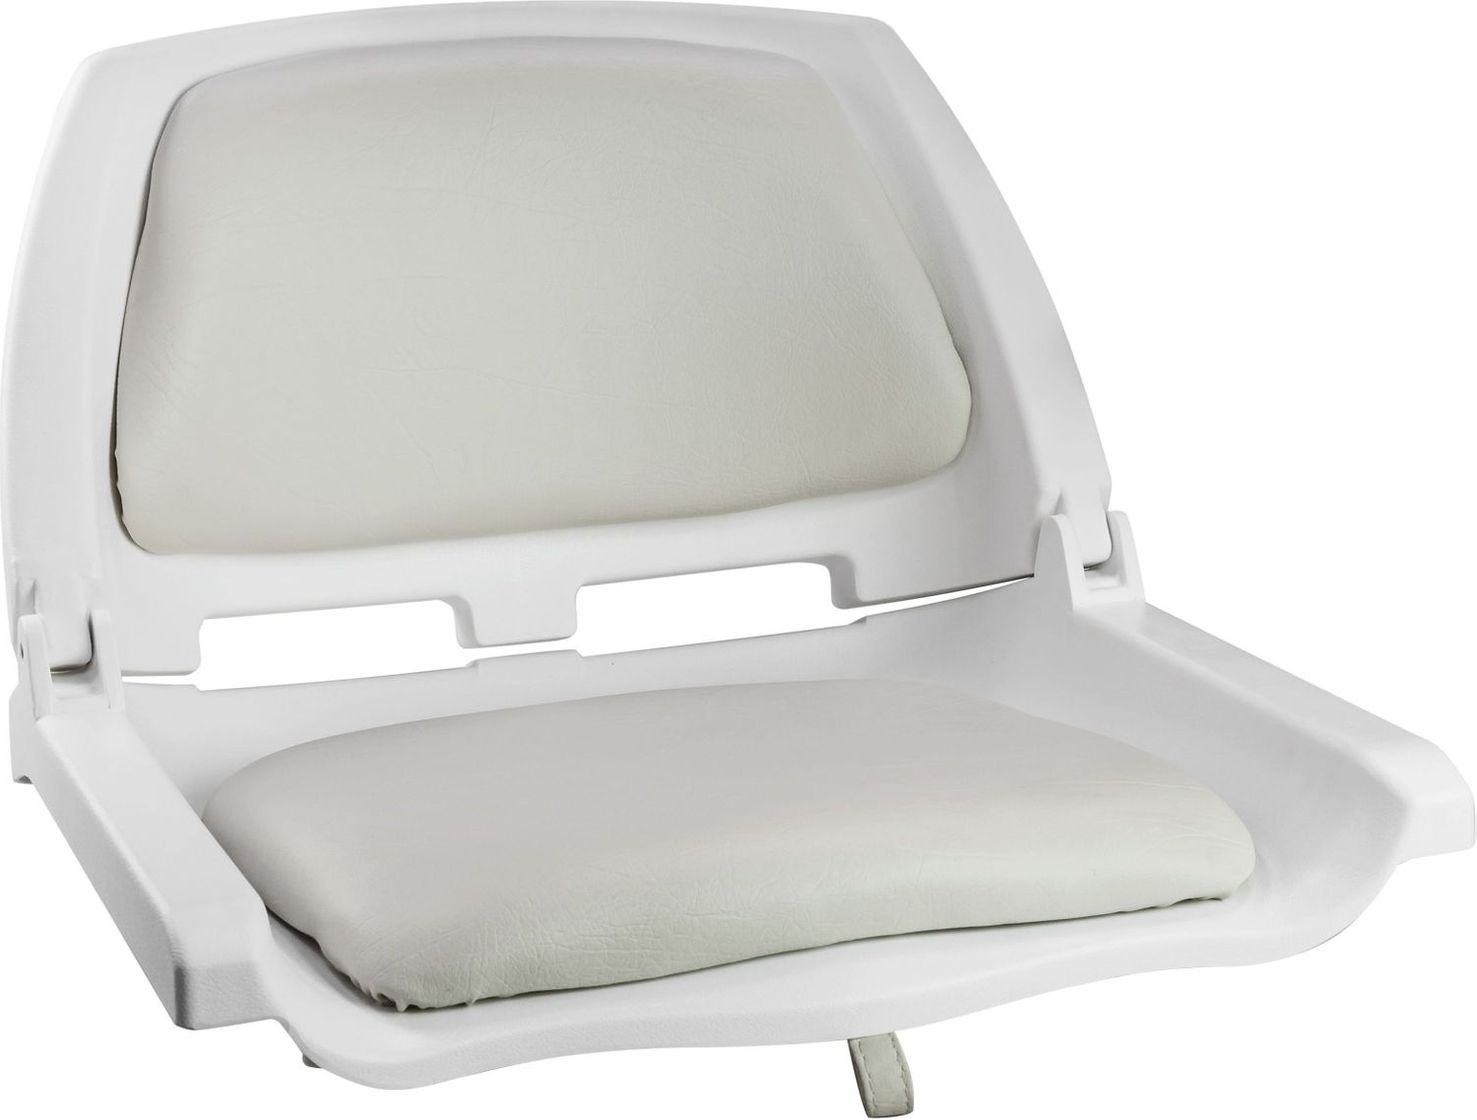 Кресло складное мягкое TRAVELER, цвет белый/серый (упаковка из 2 шт.) 1061104C_pkg_2 подставка под кресло вращающаяся с креплением к баночке надувной лодки упаковка из 2 шт c12565 pkg 2